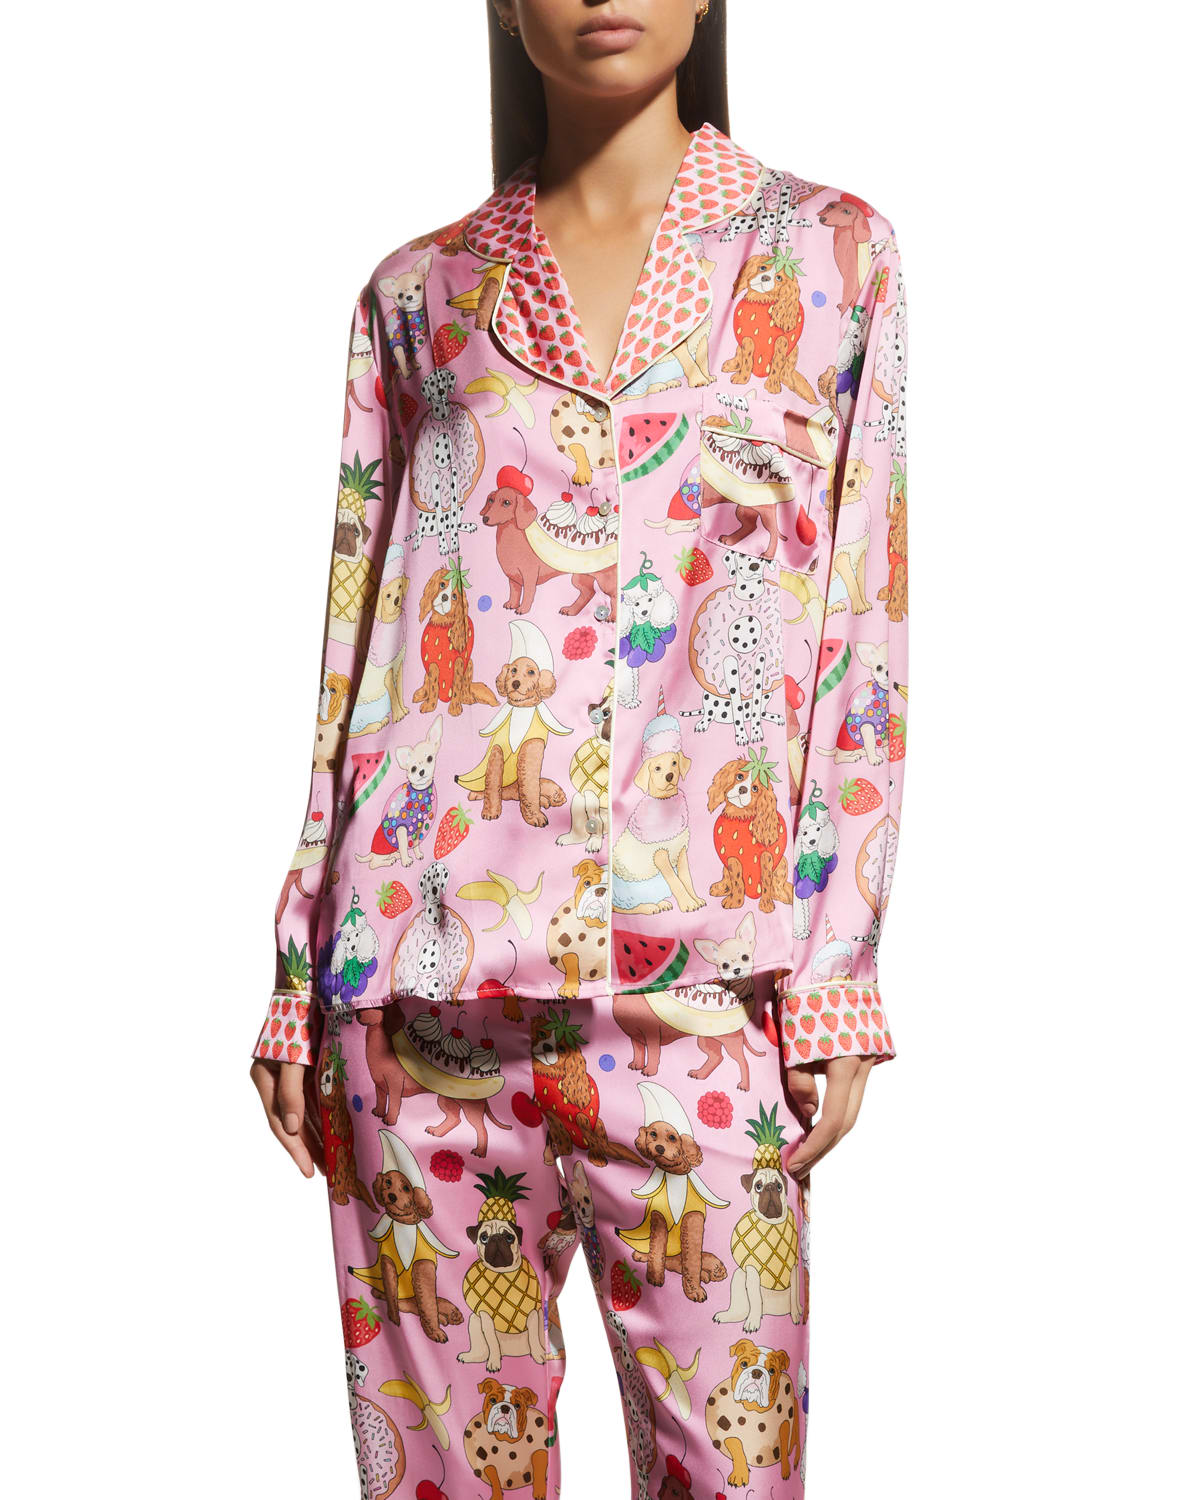 Karen Mabon Printed Satin Pajama Set